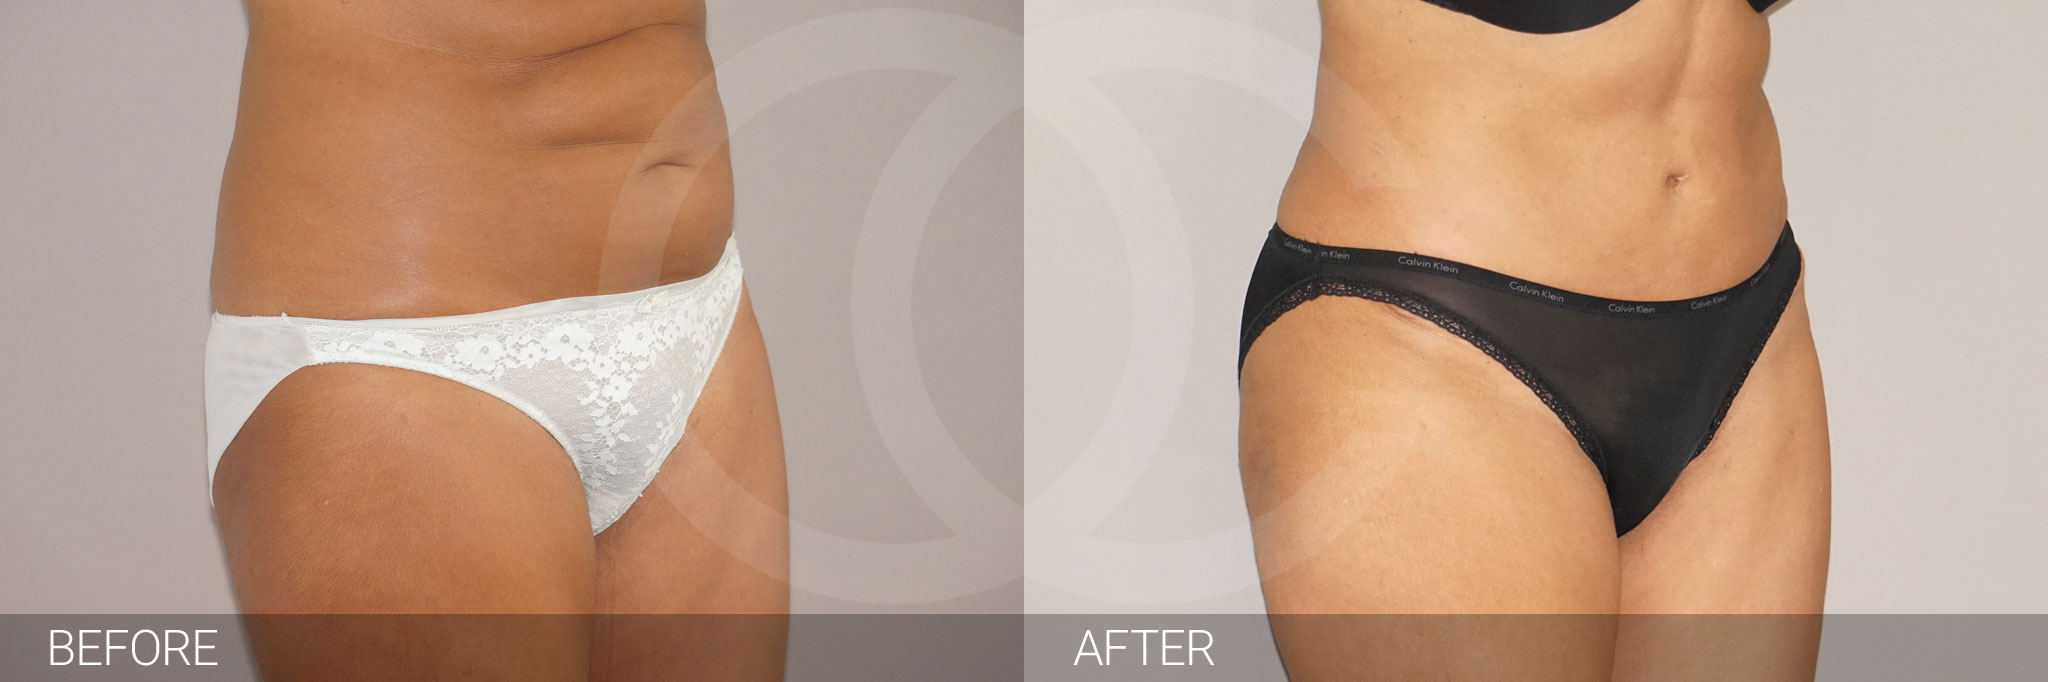 Antes y después Fotos de reducción abdominal fotos reales de pacientes 9.2 | Ocean Clinic Marbella Madrid